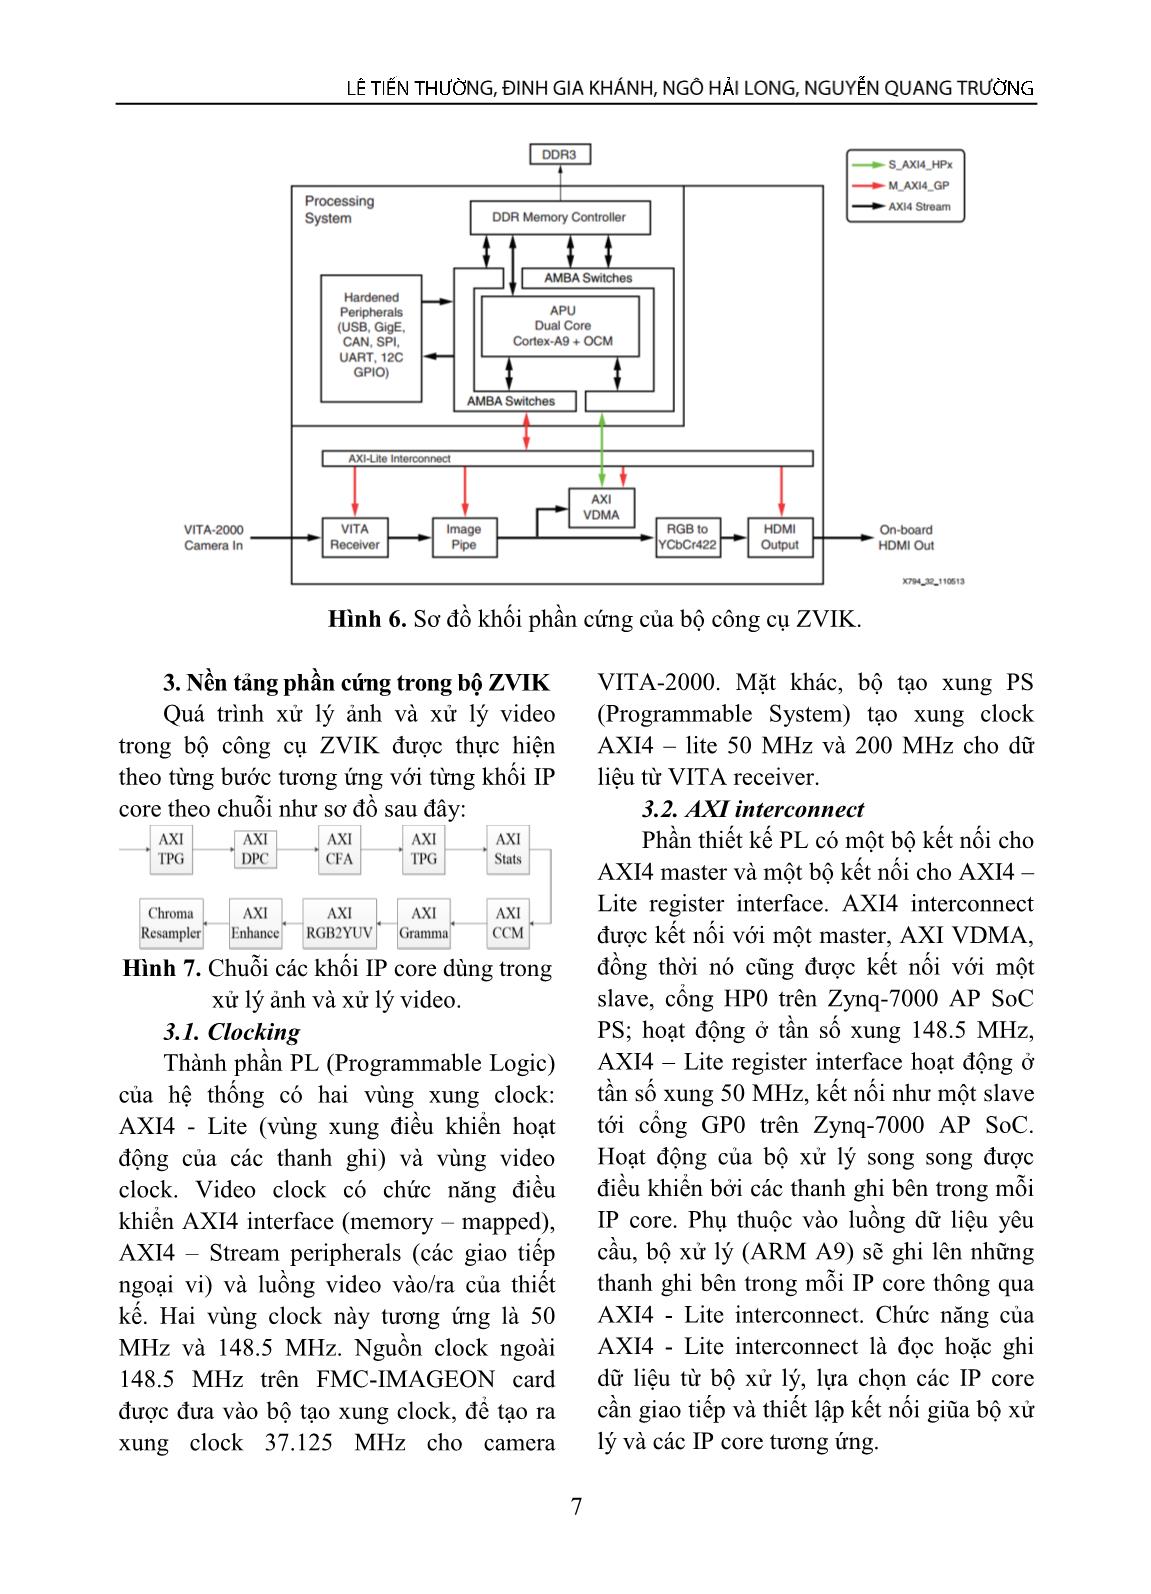 Ứng dụng công cụ mới trên nền tảng FPGA vào xử lý ảnh và video trang 5